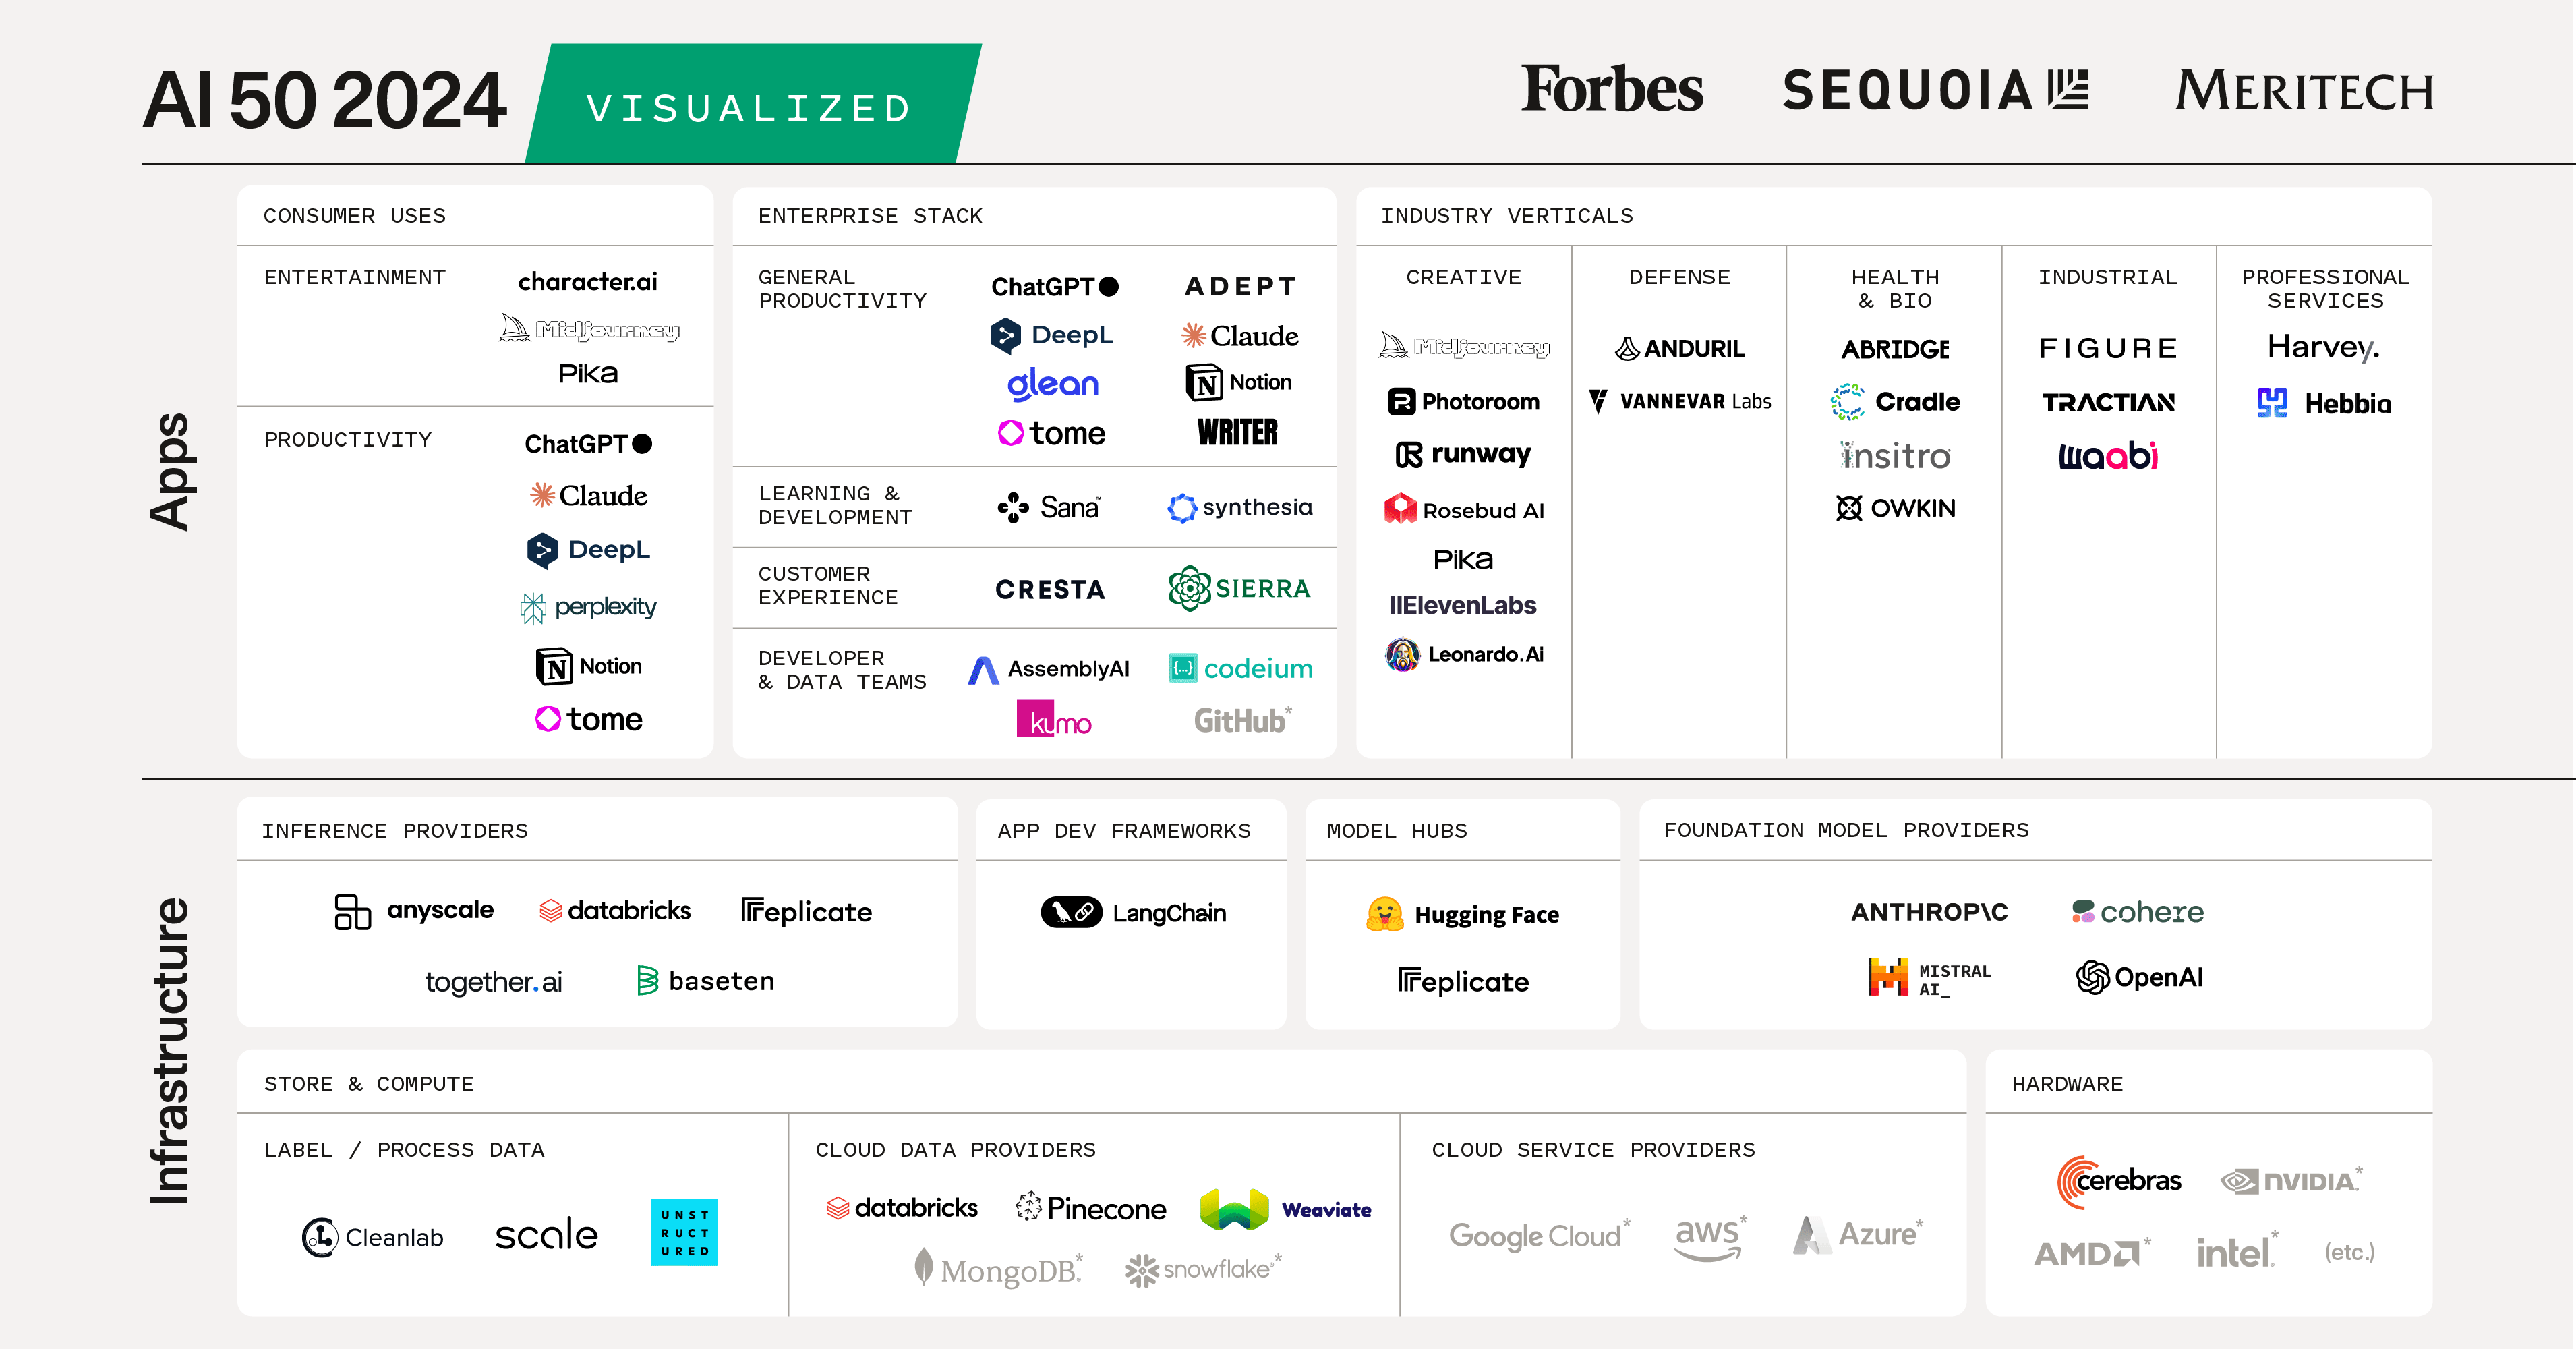 AI 50: Companies of the Future